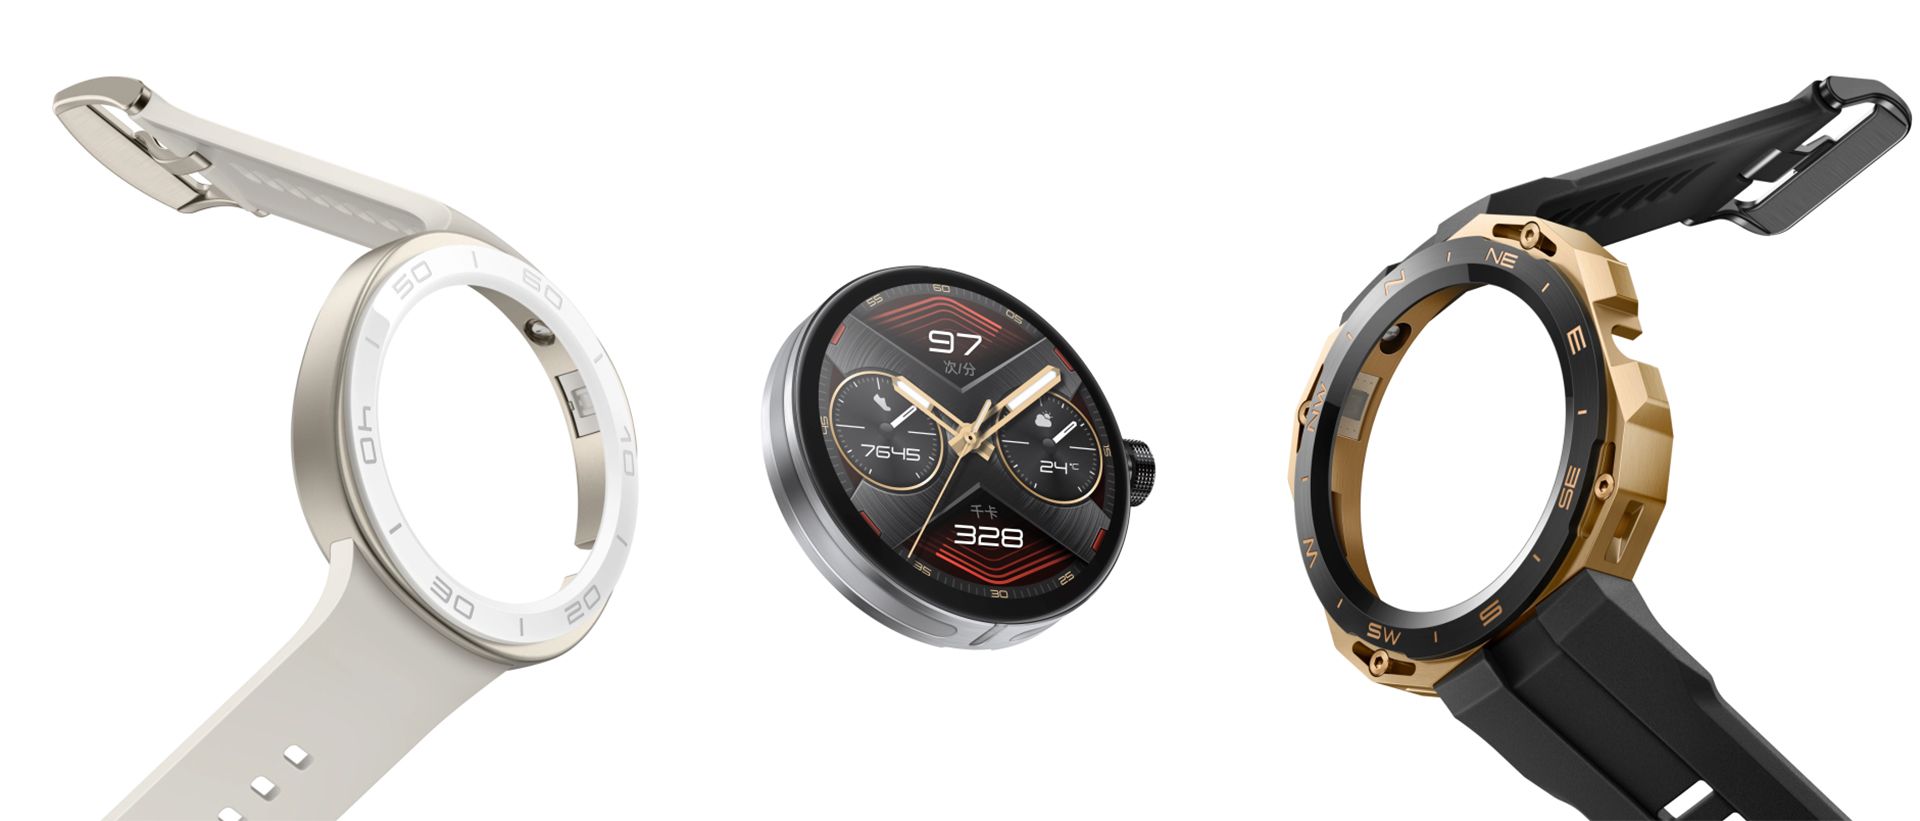 بدنه و صفحه ساعت هوشمند Watch GT Cyber به رنگهای سفید و مشکی